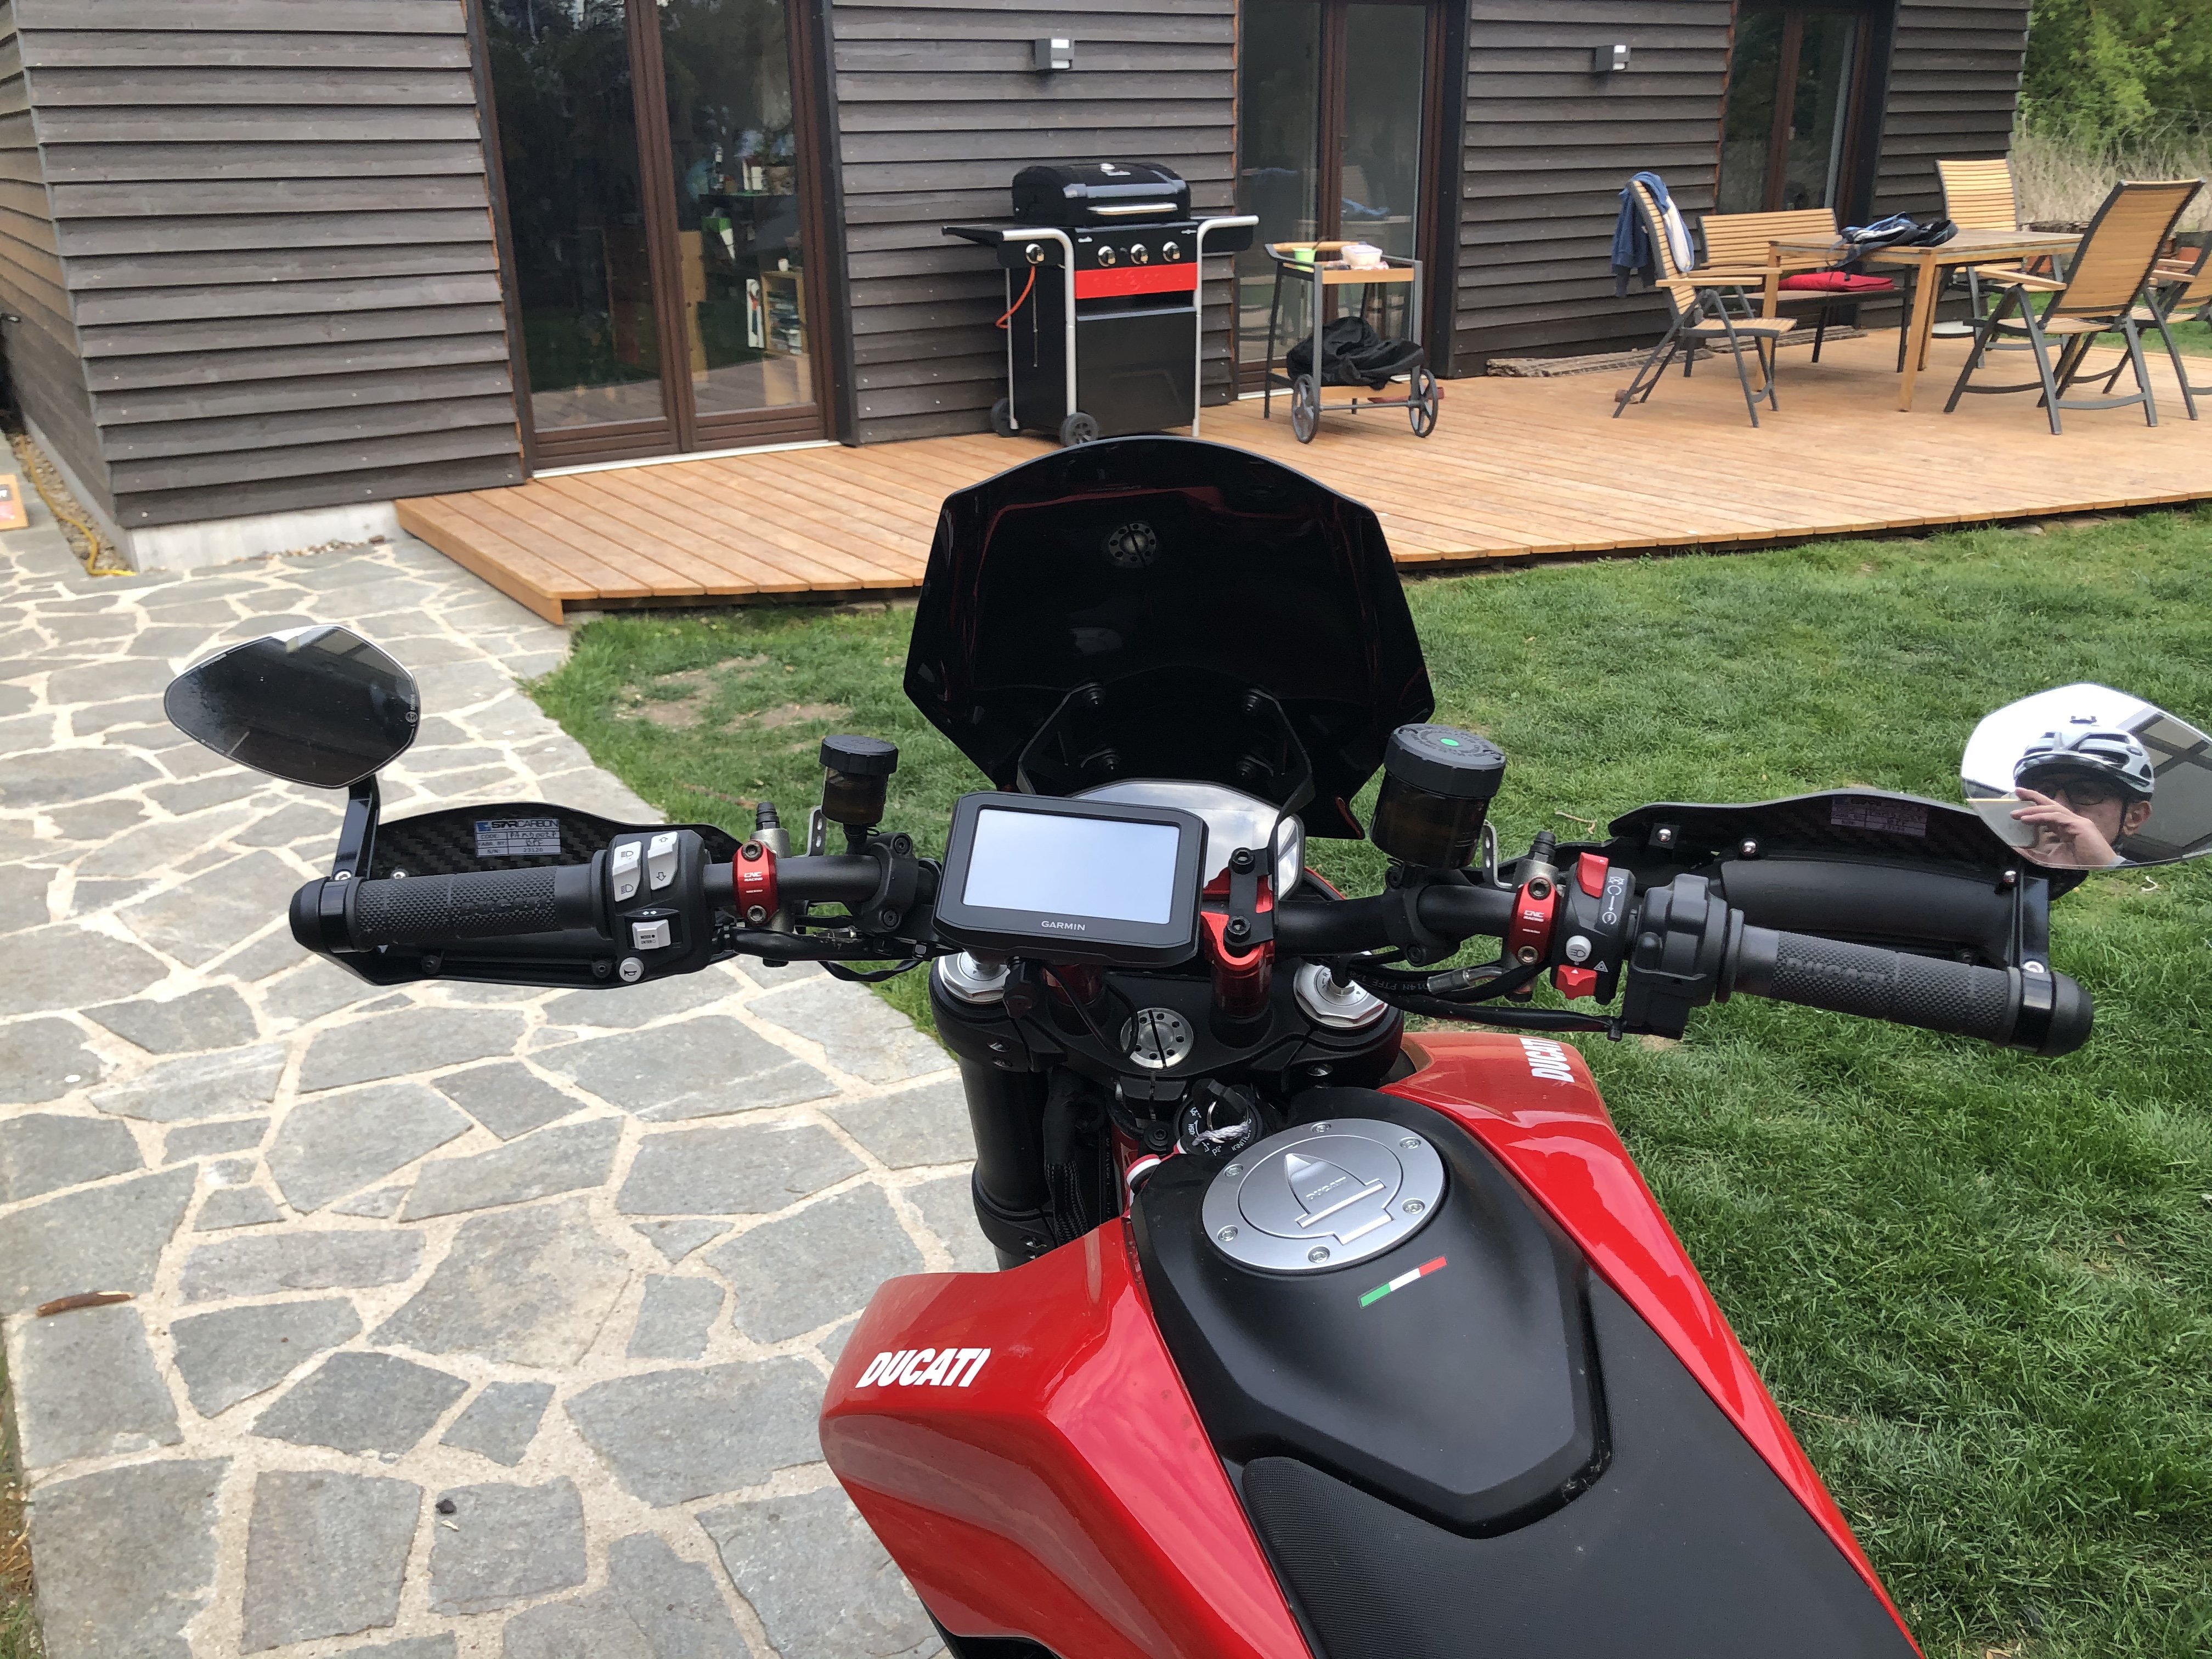 Kleber für Windschutzscheibe - Ducati Hypermotard 950